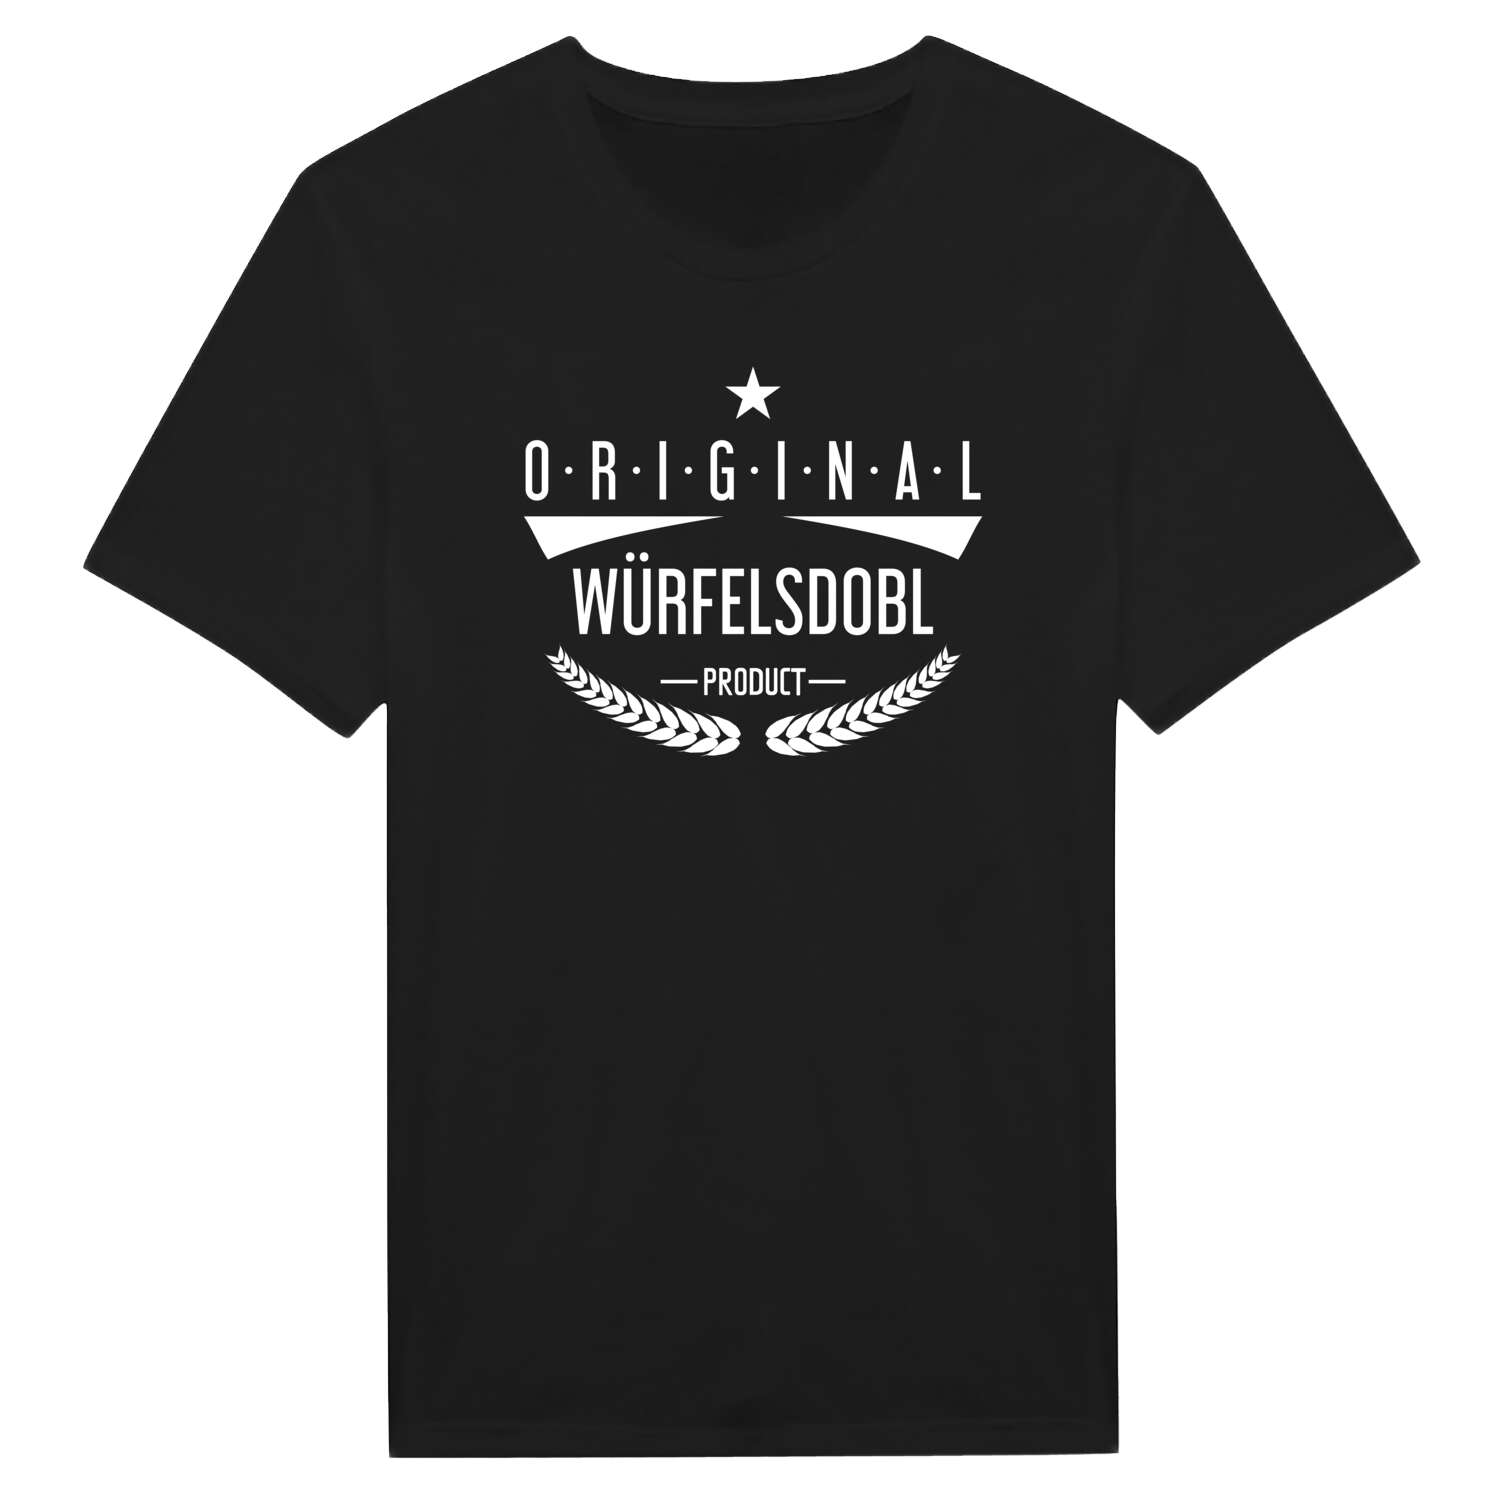 Würfelsdobl T-Shirt »Original Product«